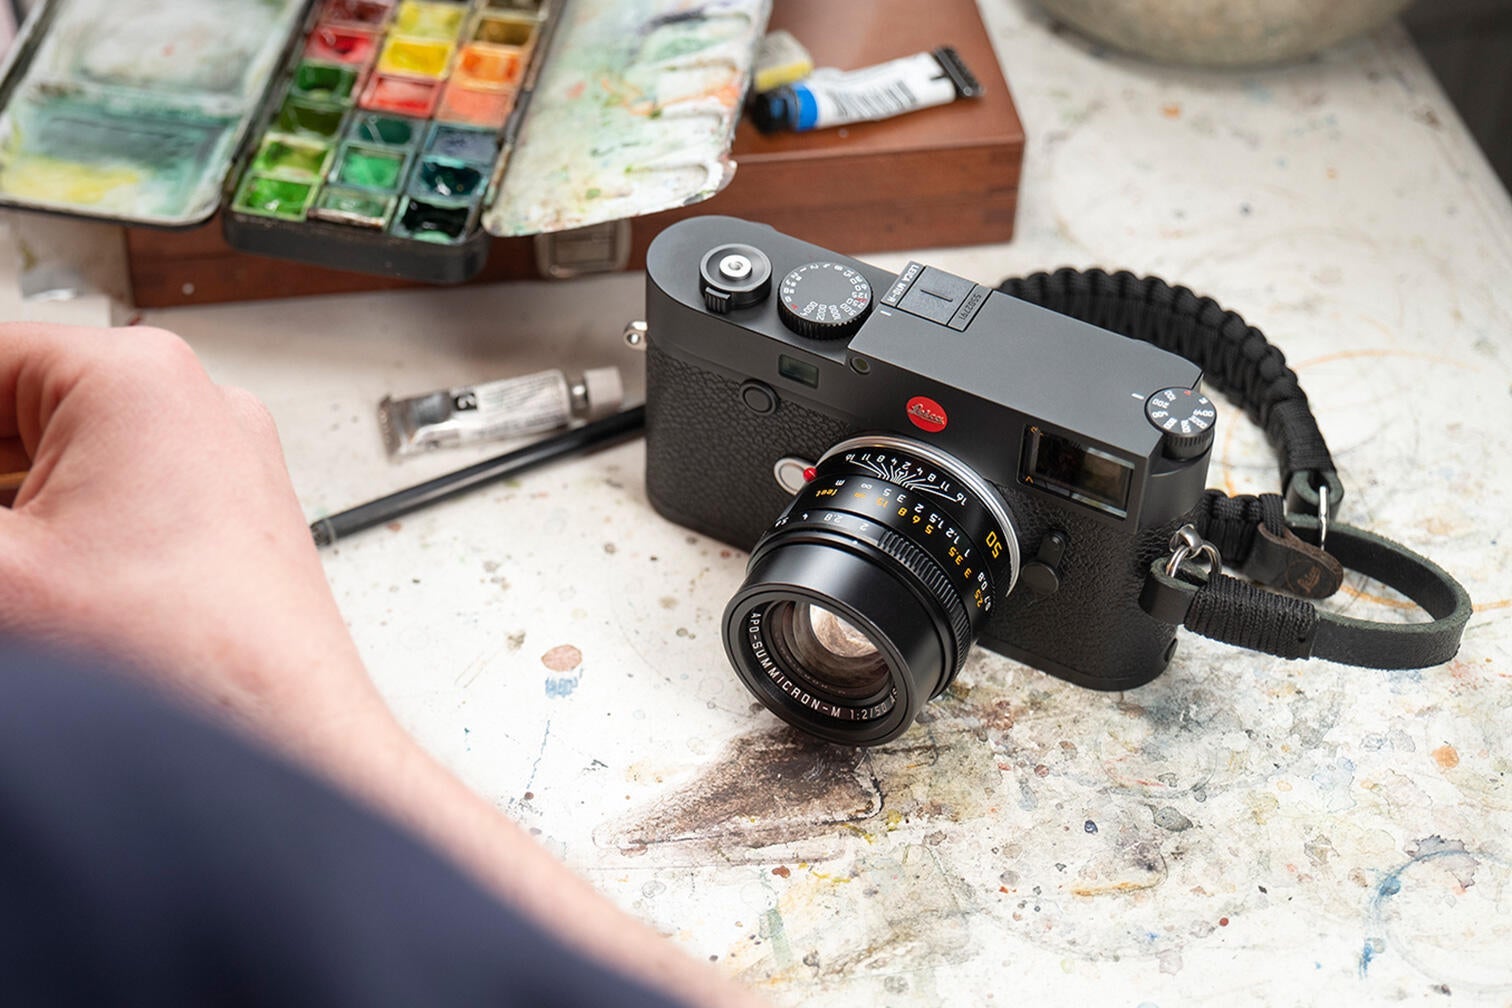 A Leica camera